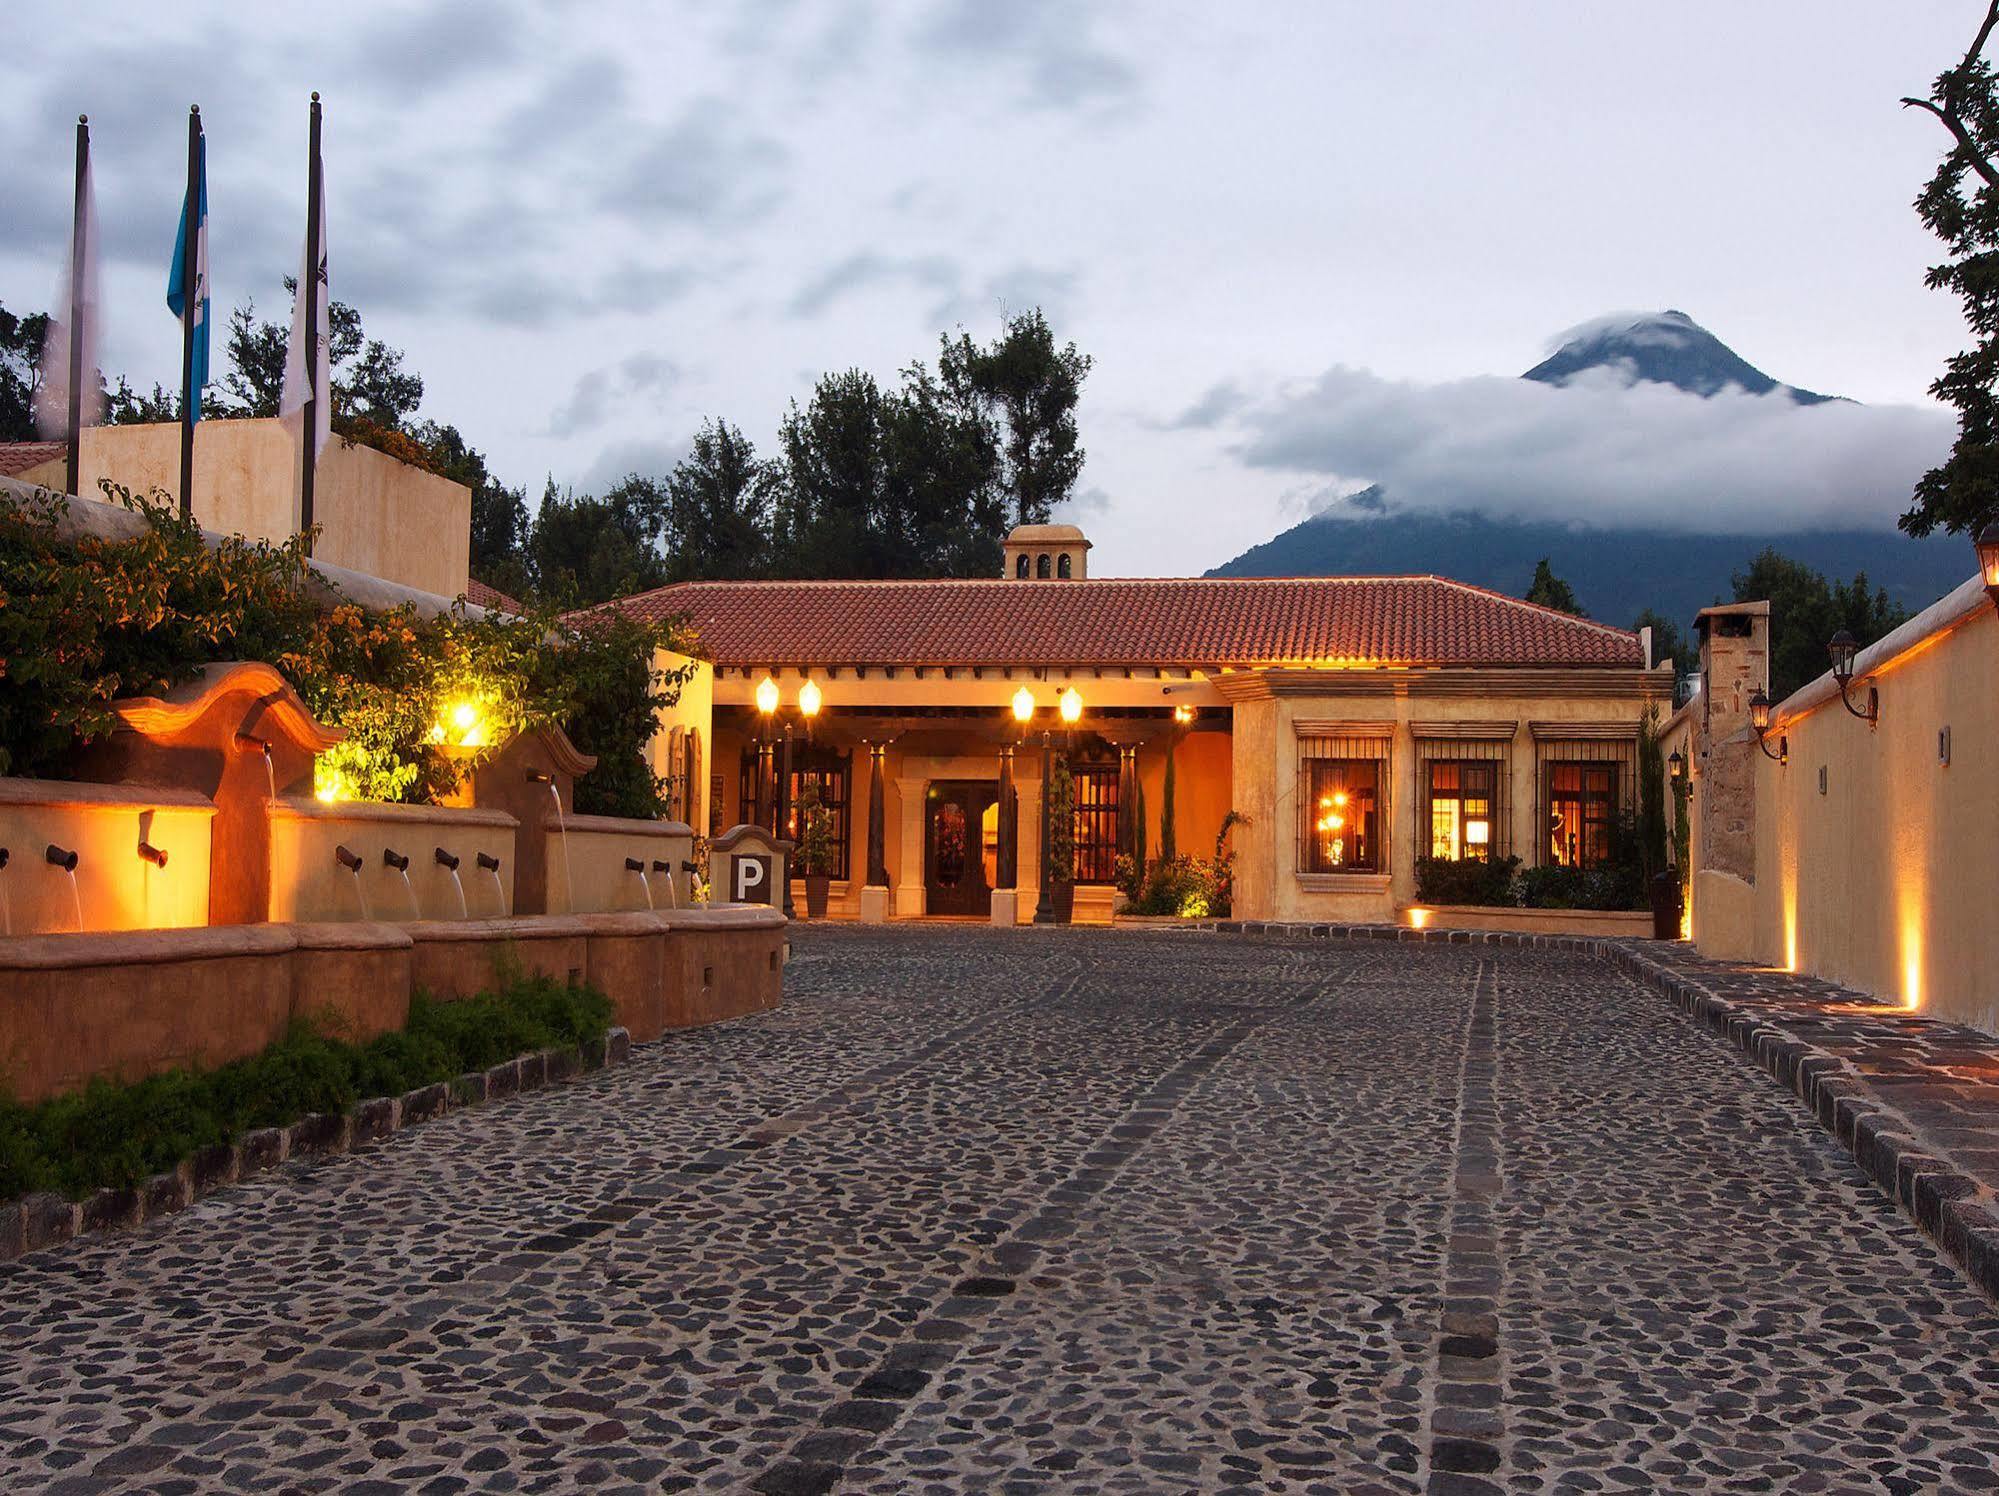 Camino Real Antigua Hotell Exteriör bild